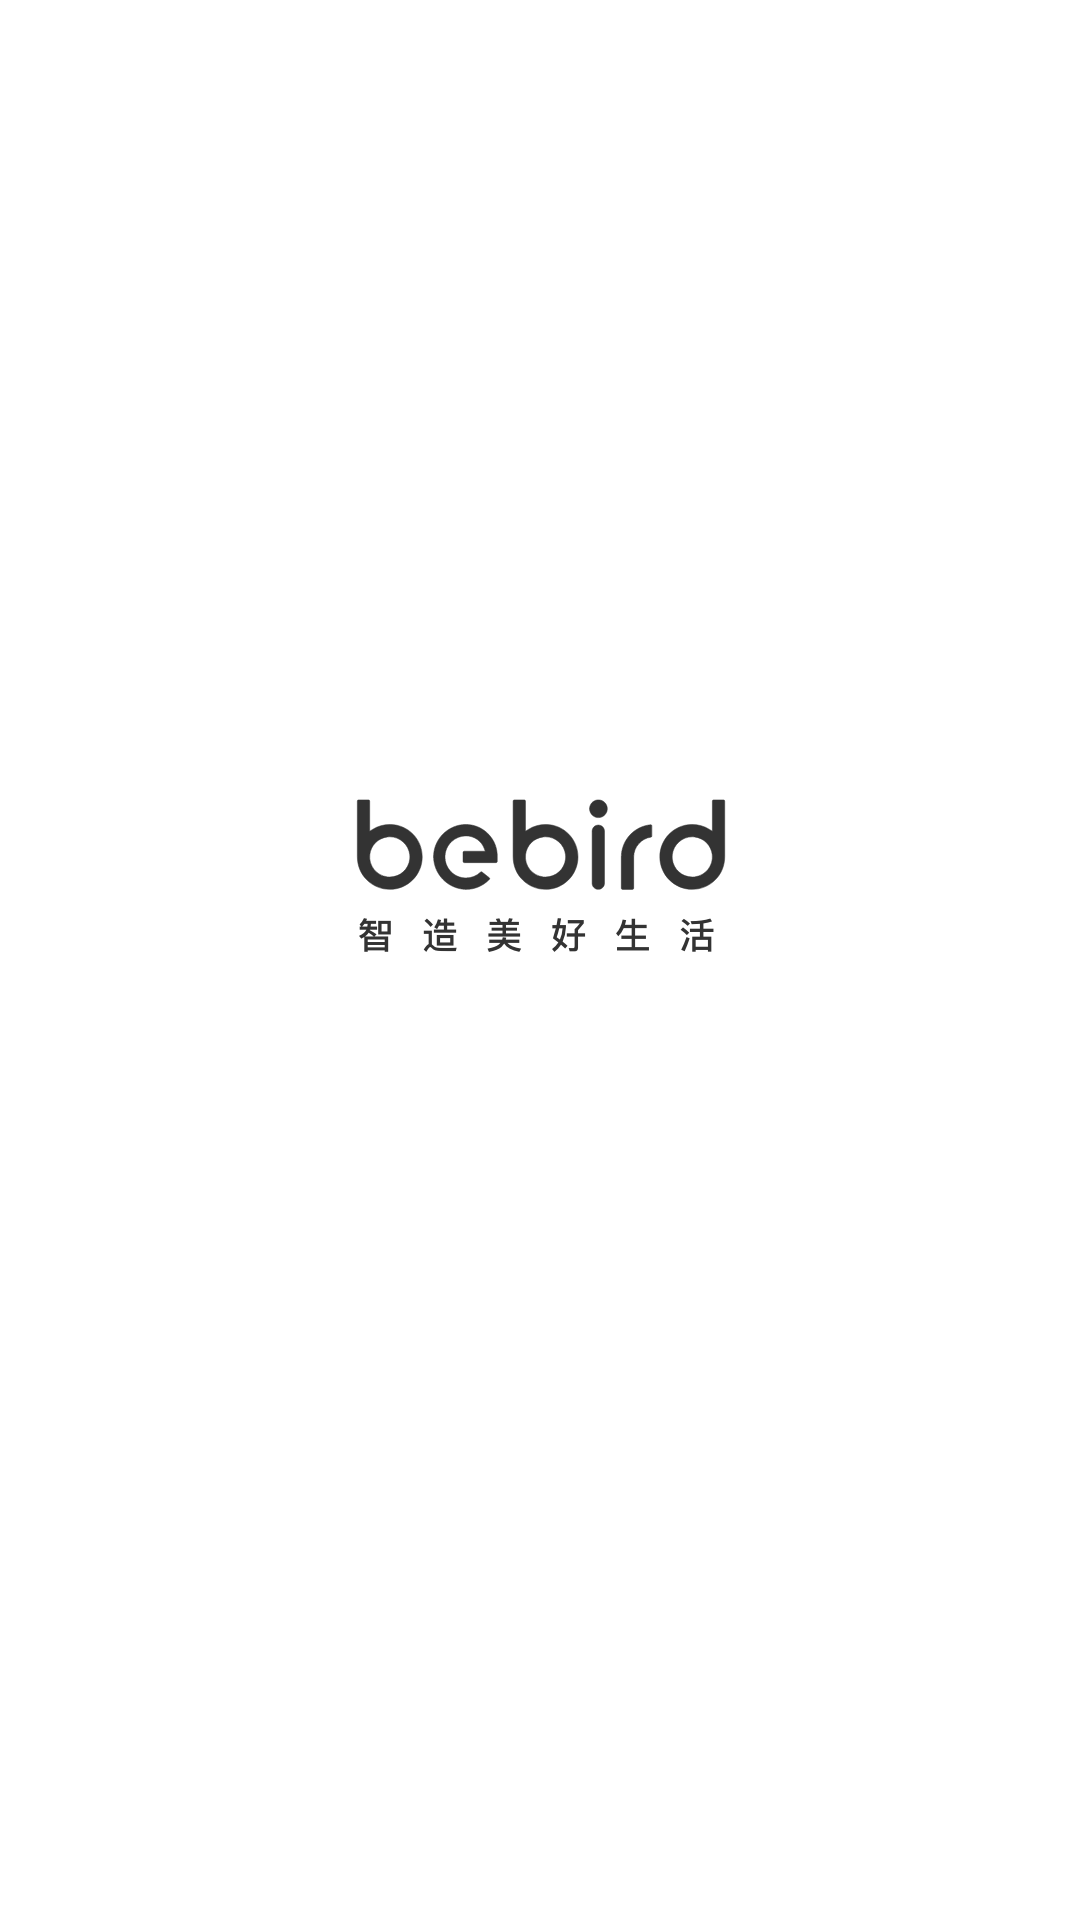 bebirdv6.1.49截图5